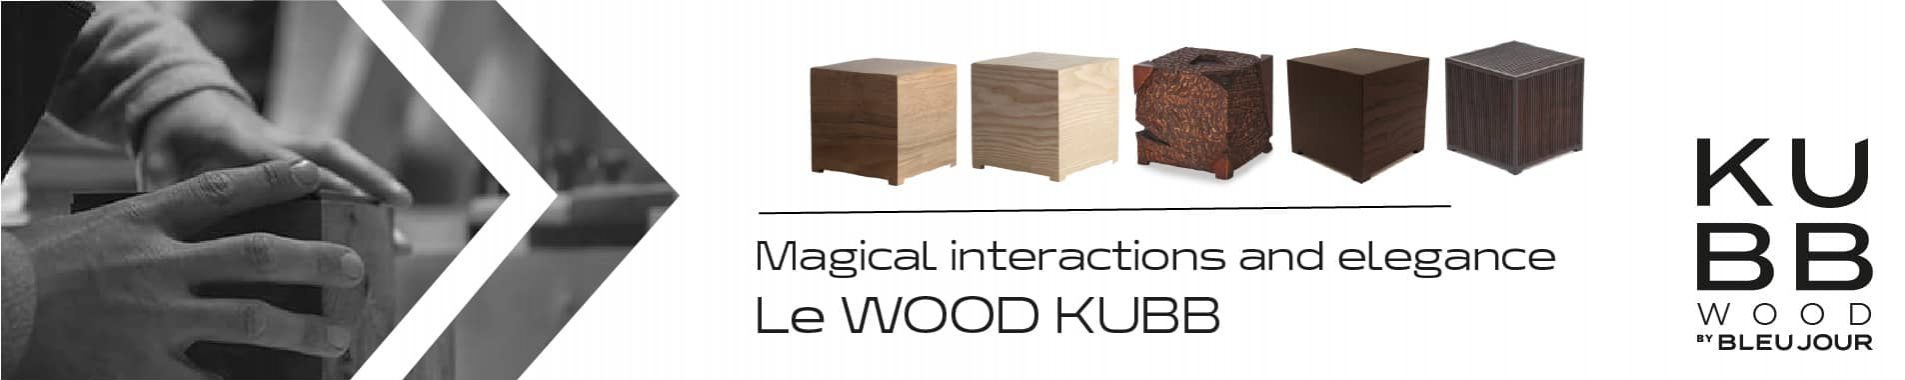 MIni PC Wood Kubb